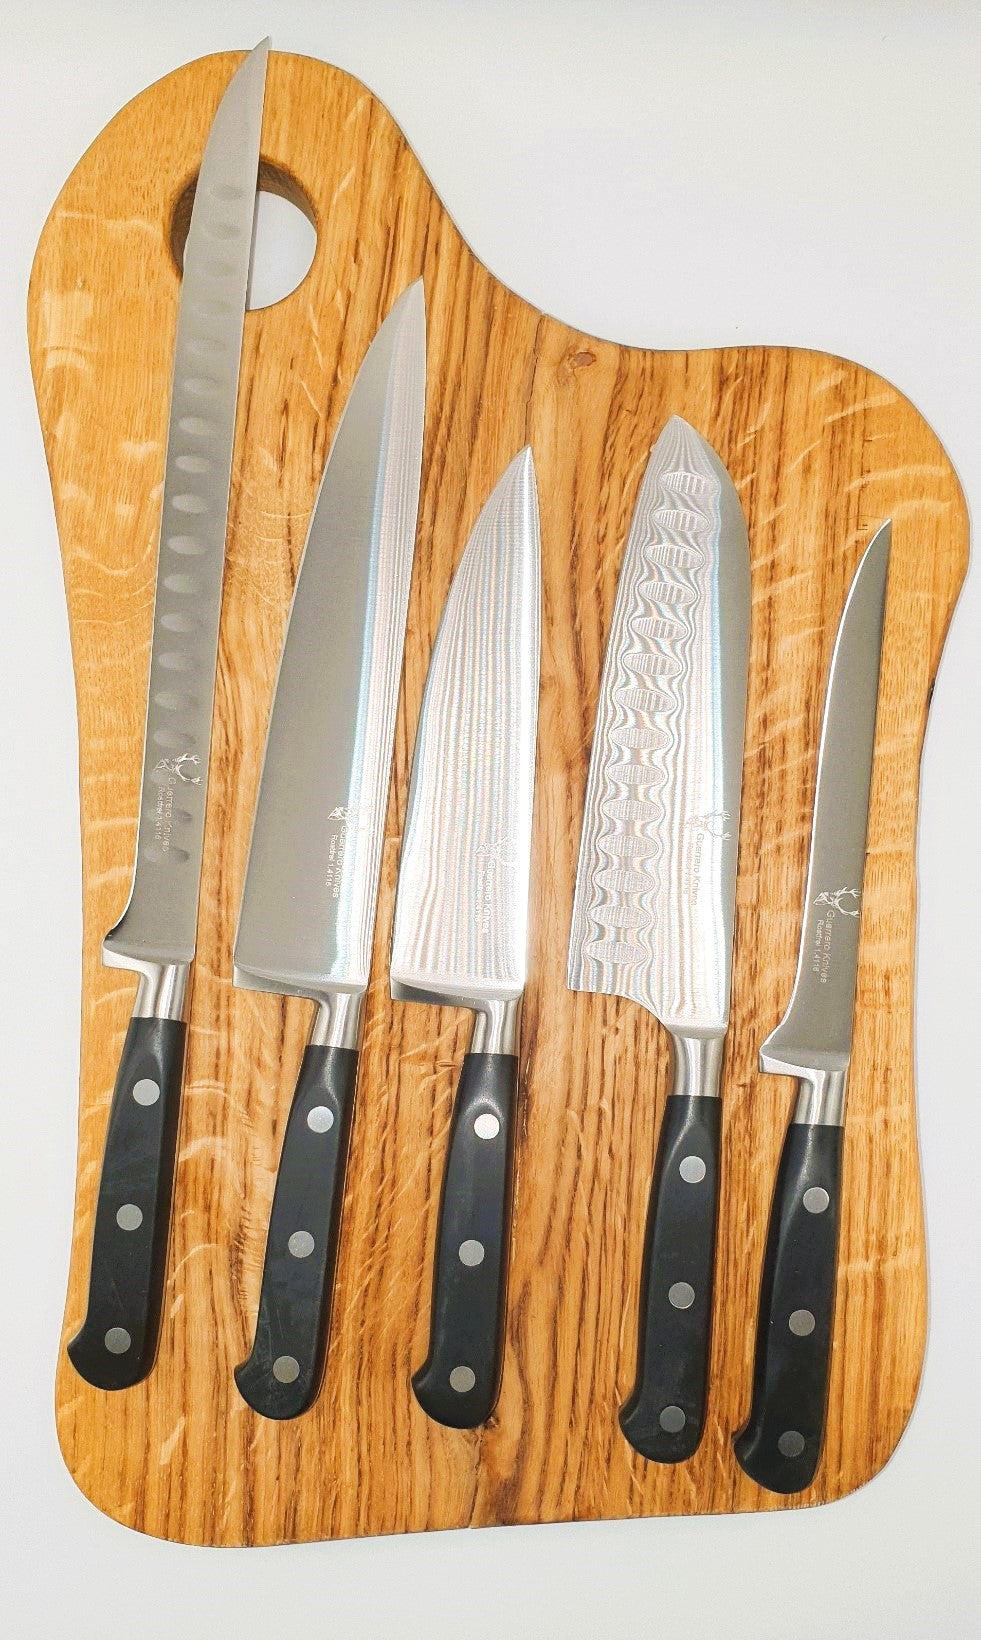 1A-Zerwirkmesser Einzeln/Set von Guerrero Knives Klassik-Serie für Spülmaschine geeignet